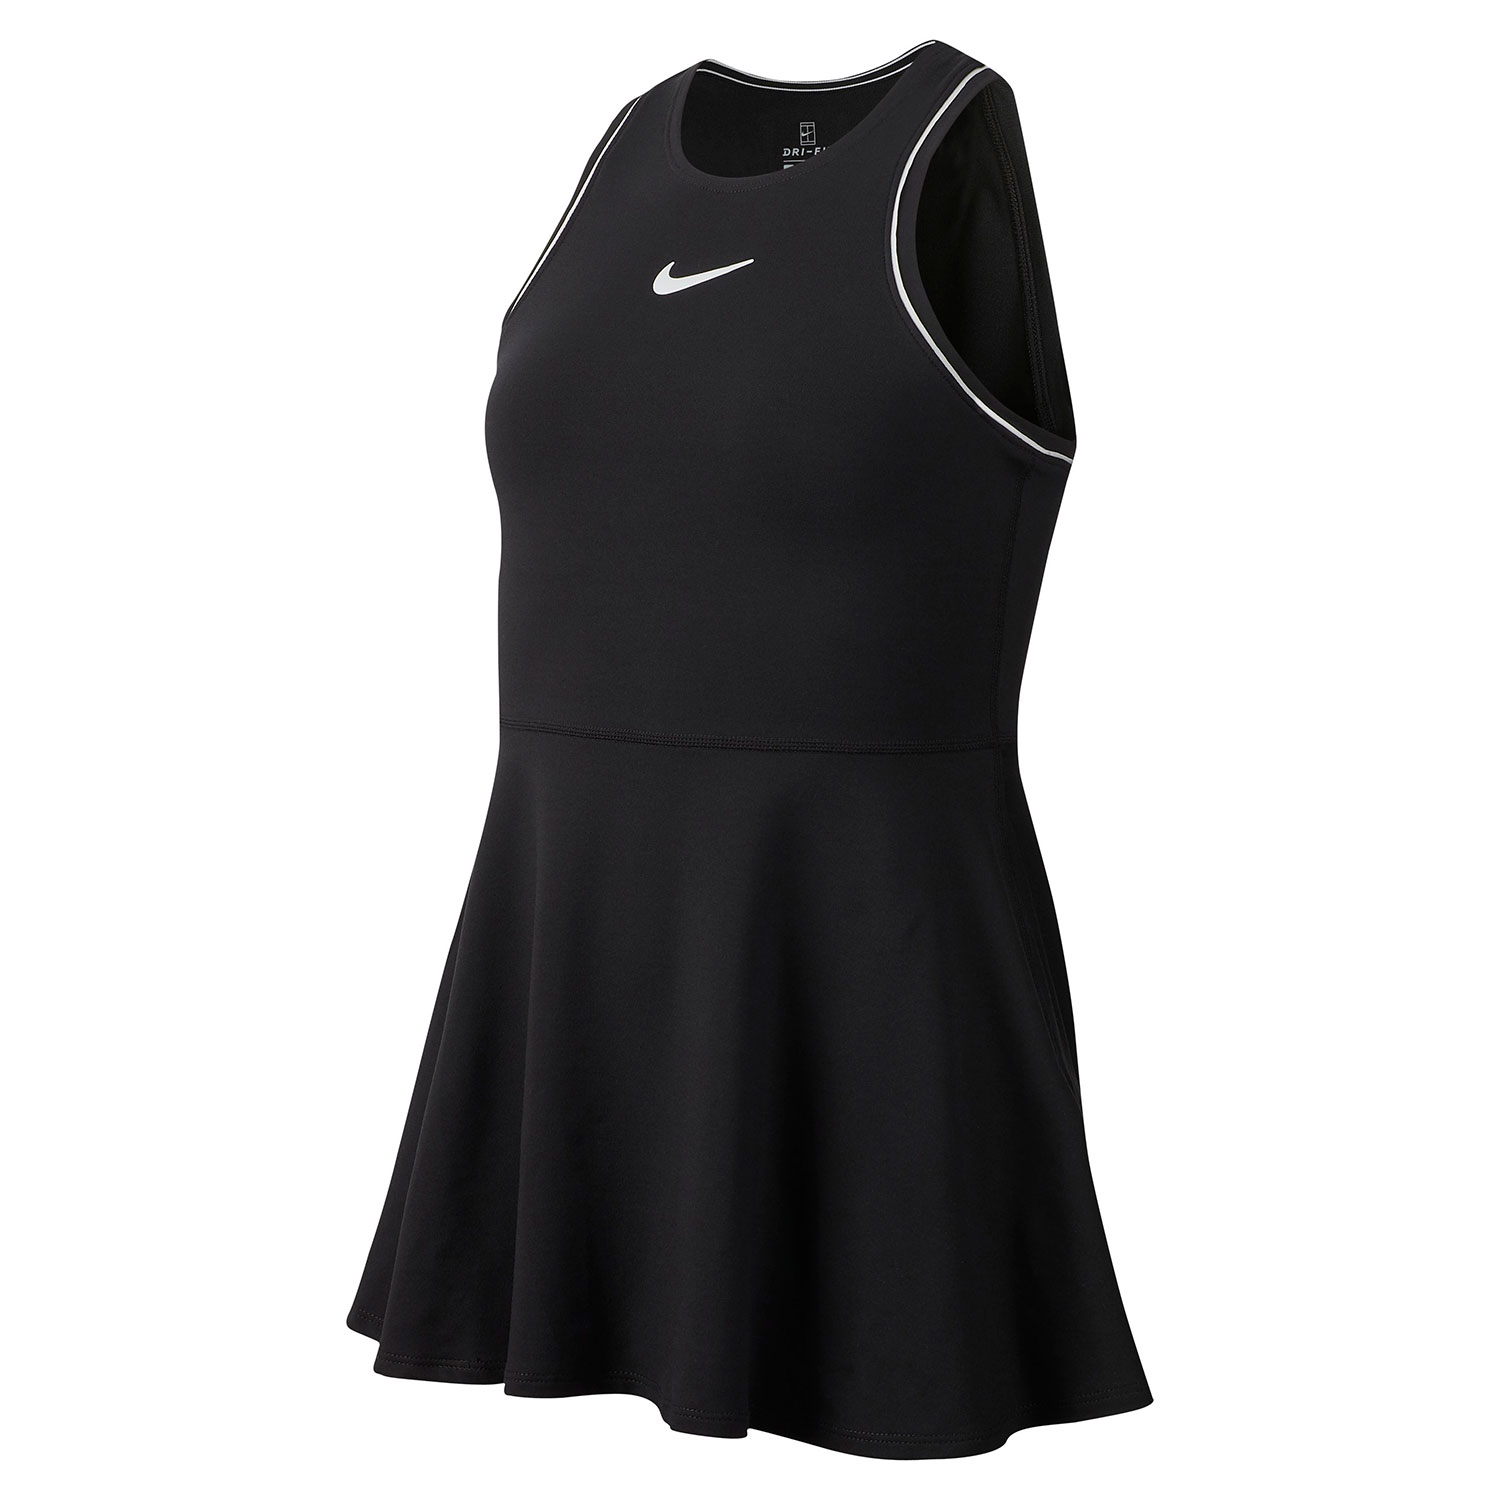 Nike Dry Vestito da Tennis per Bambina - Nero/Bianco